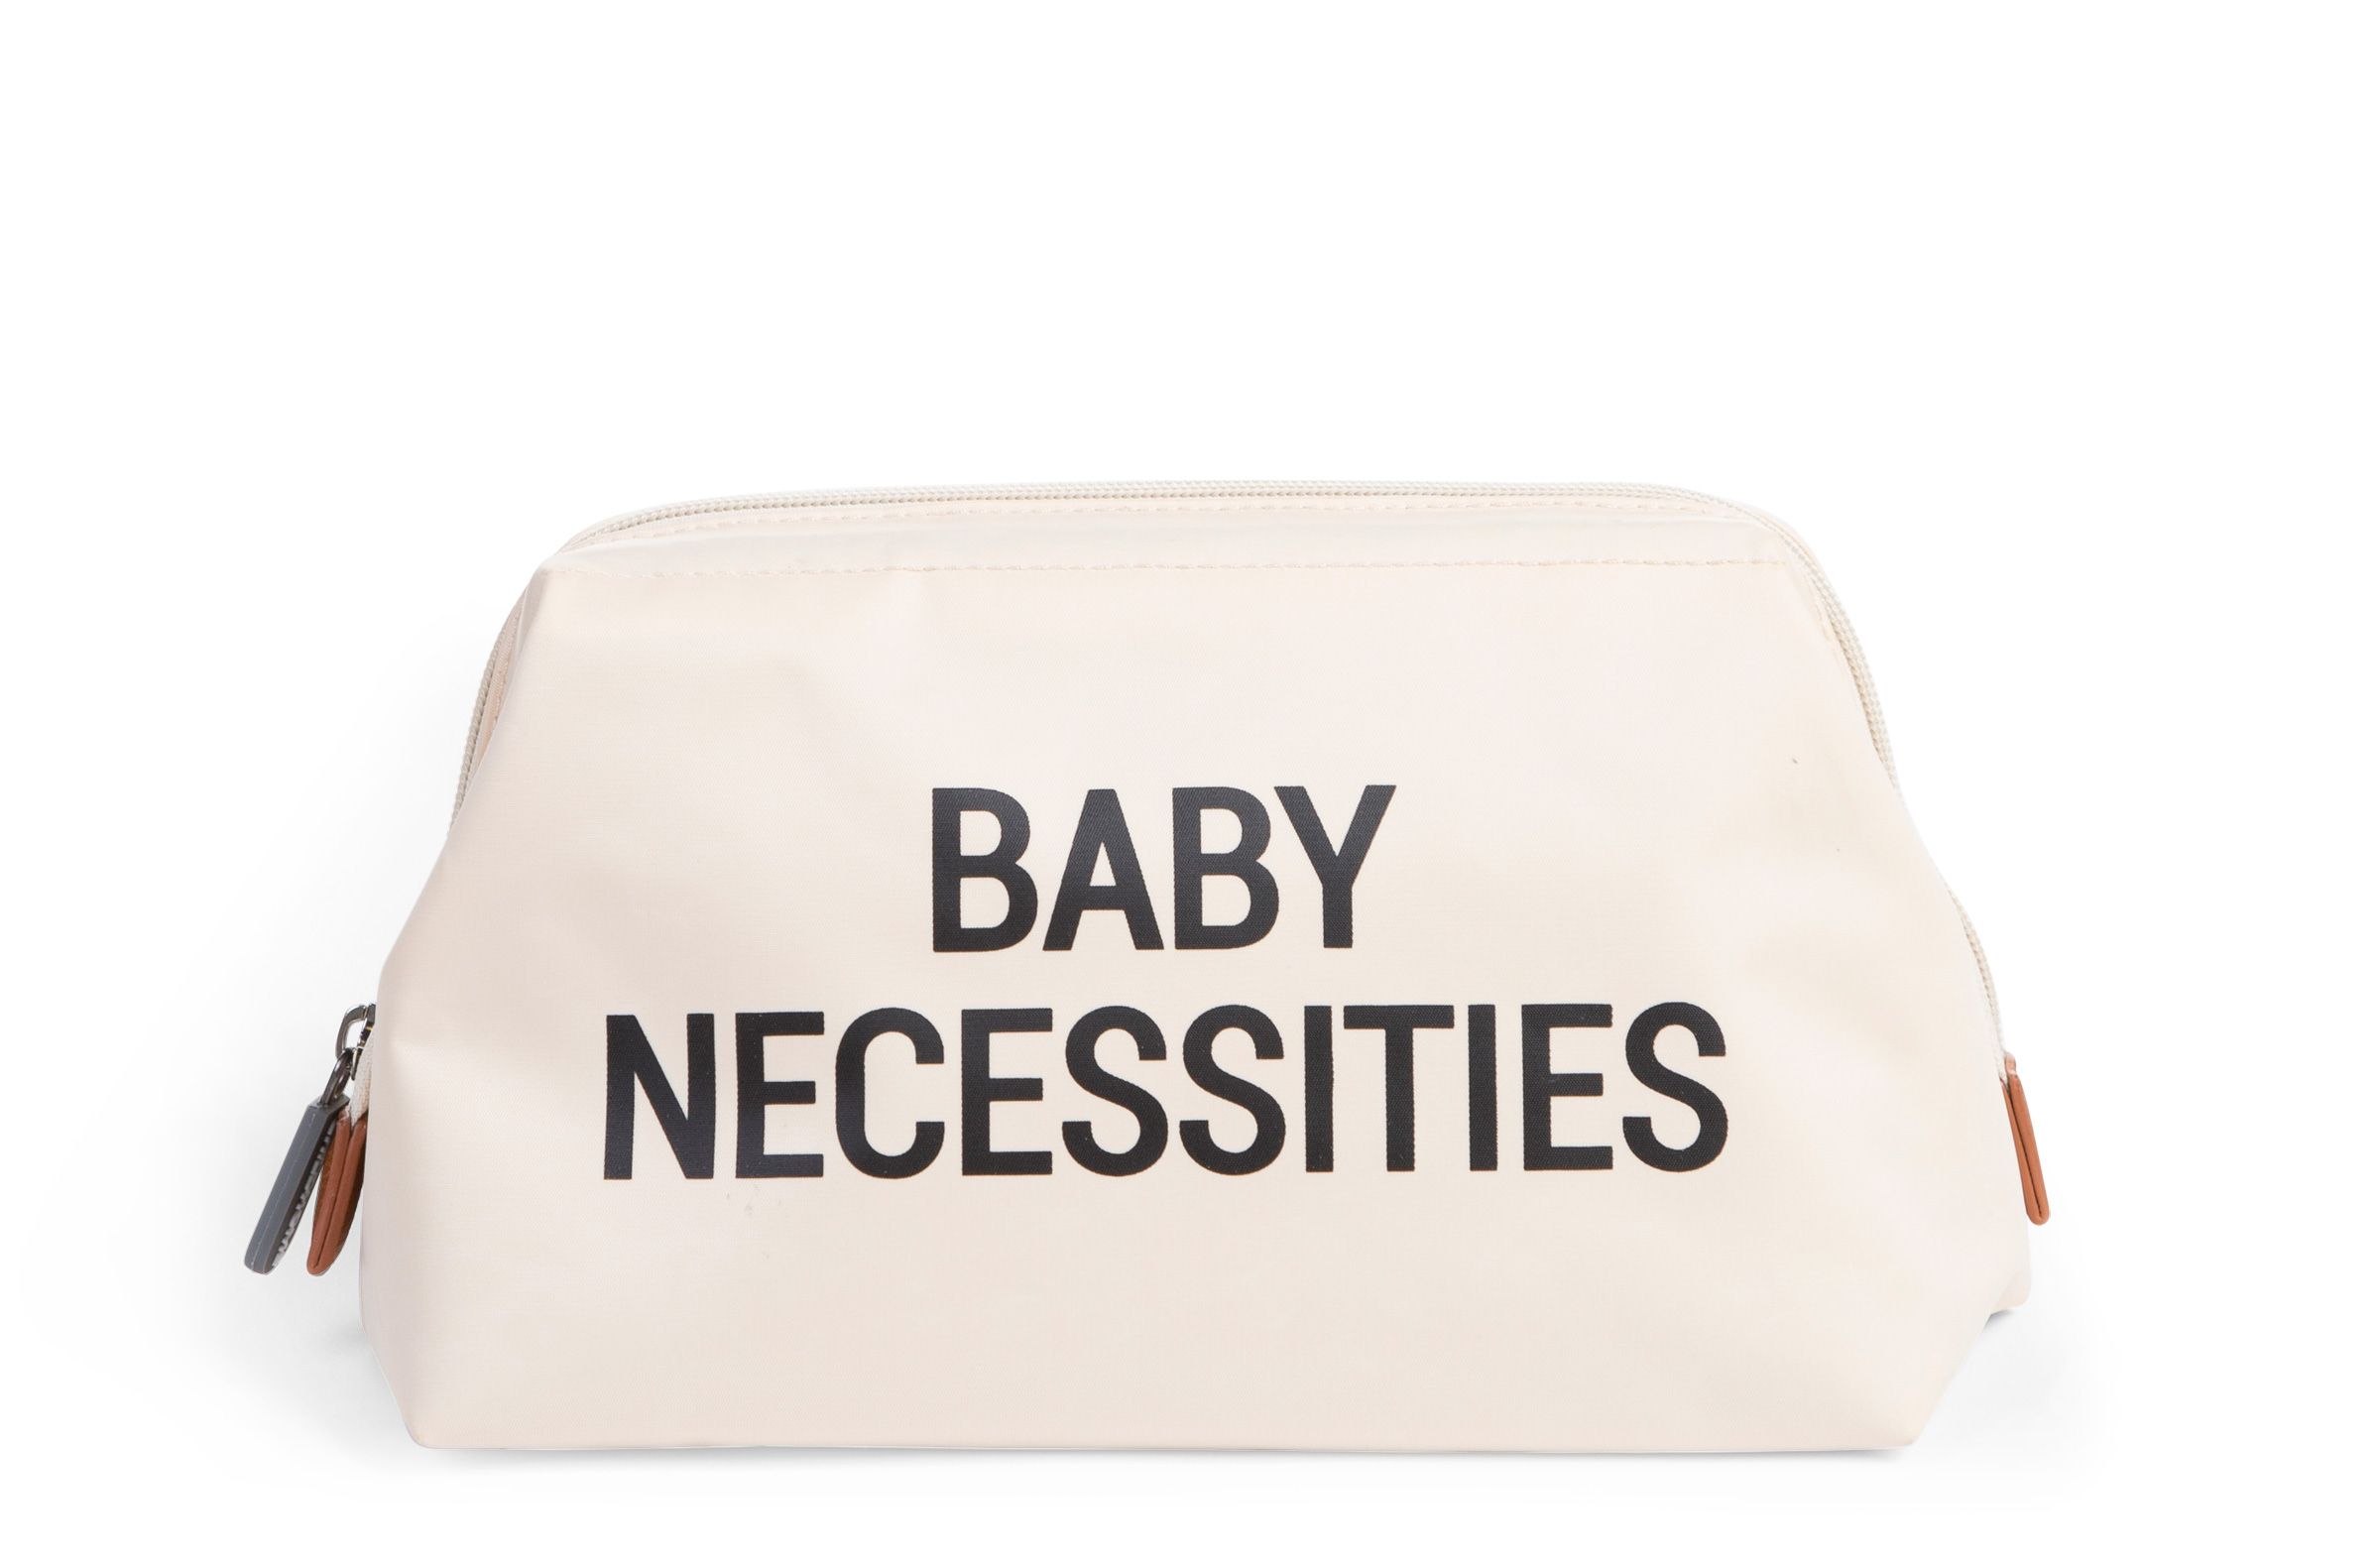 Baby necessities toiletry bag